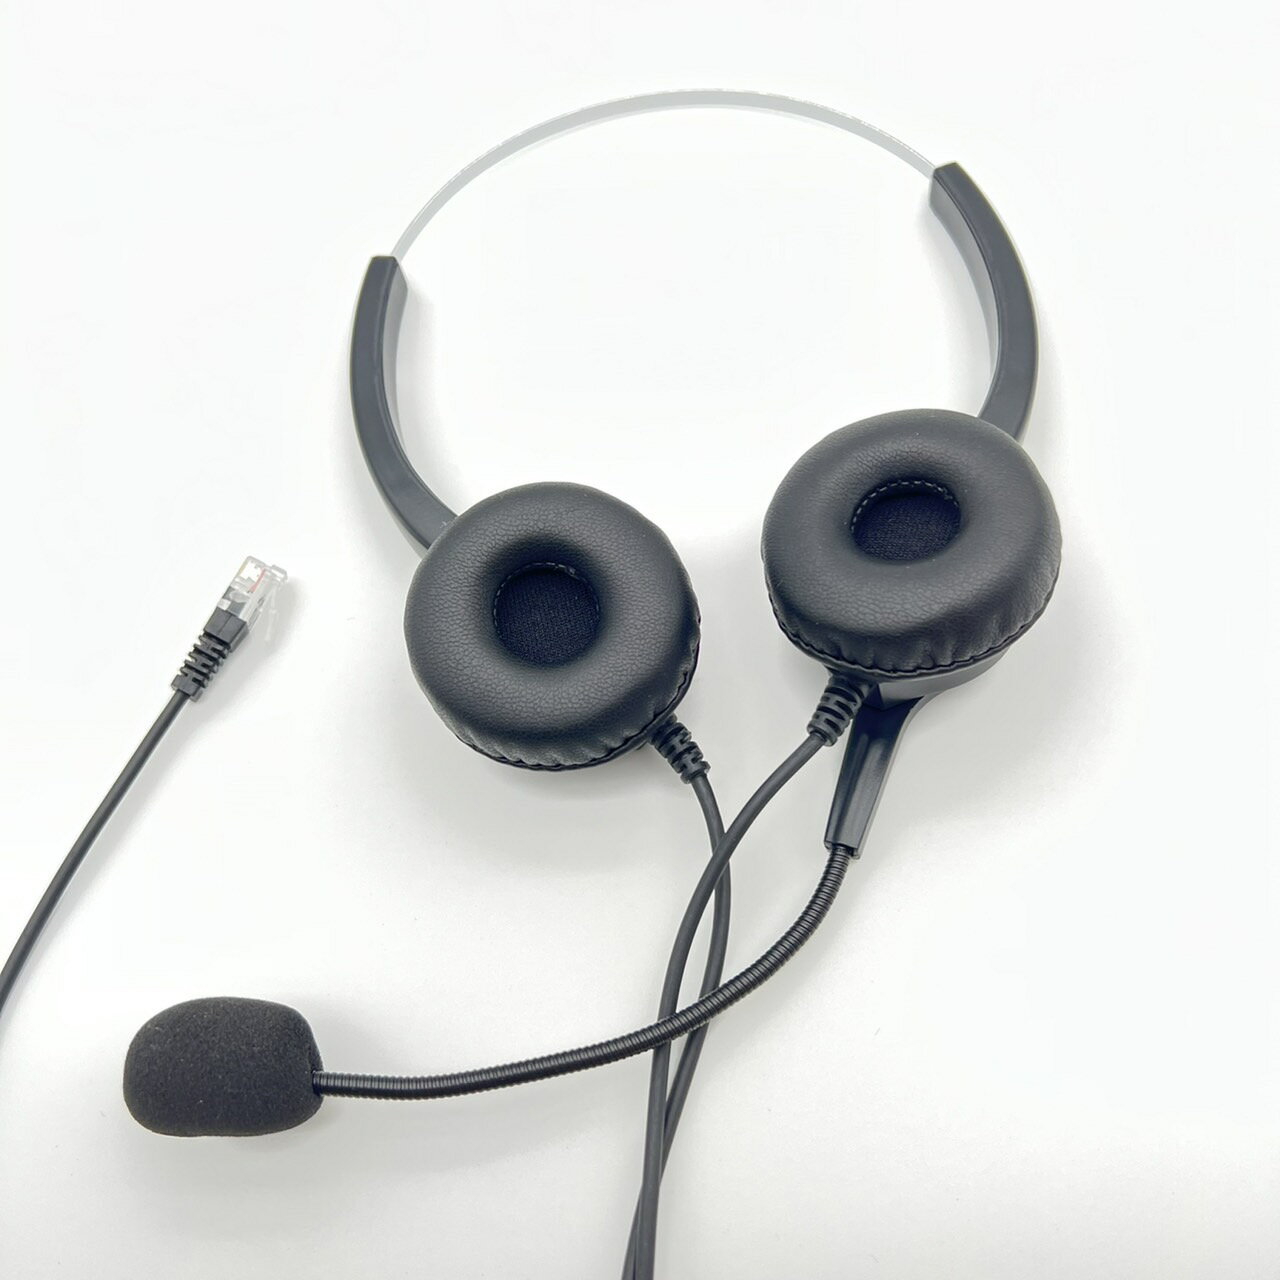 消除噪音 降噪抗噪耳麥 雙耳耳機麥克風 東訊電話專用